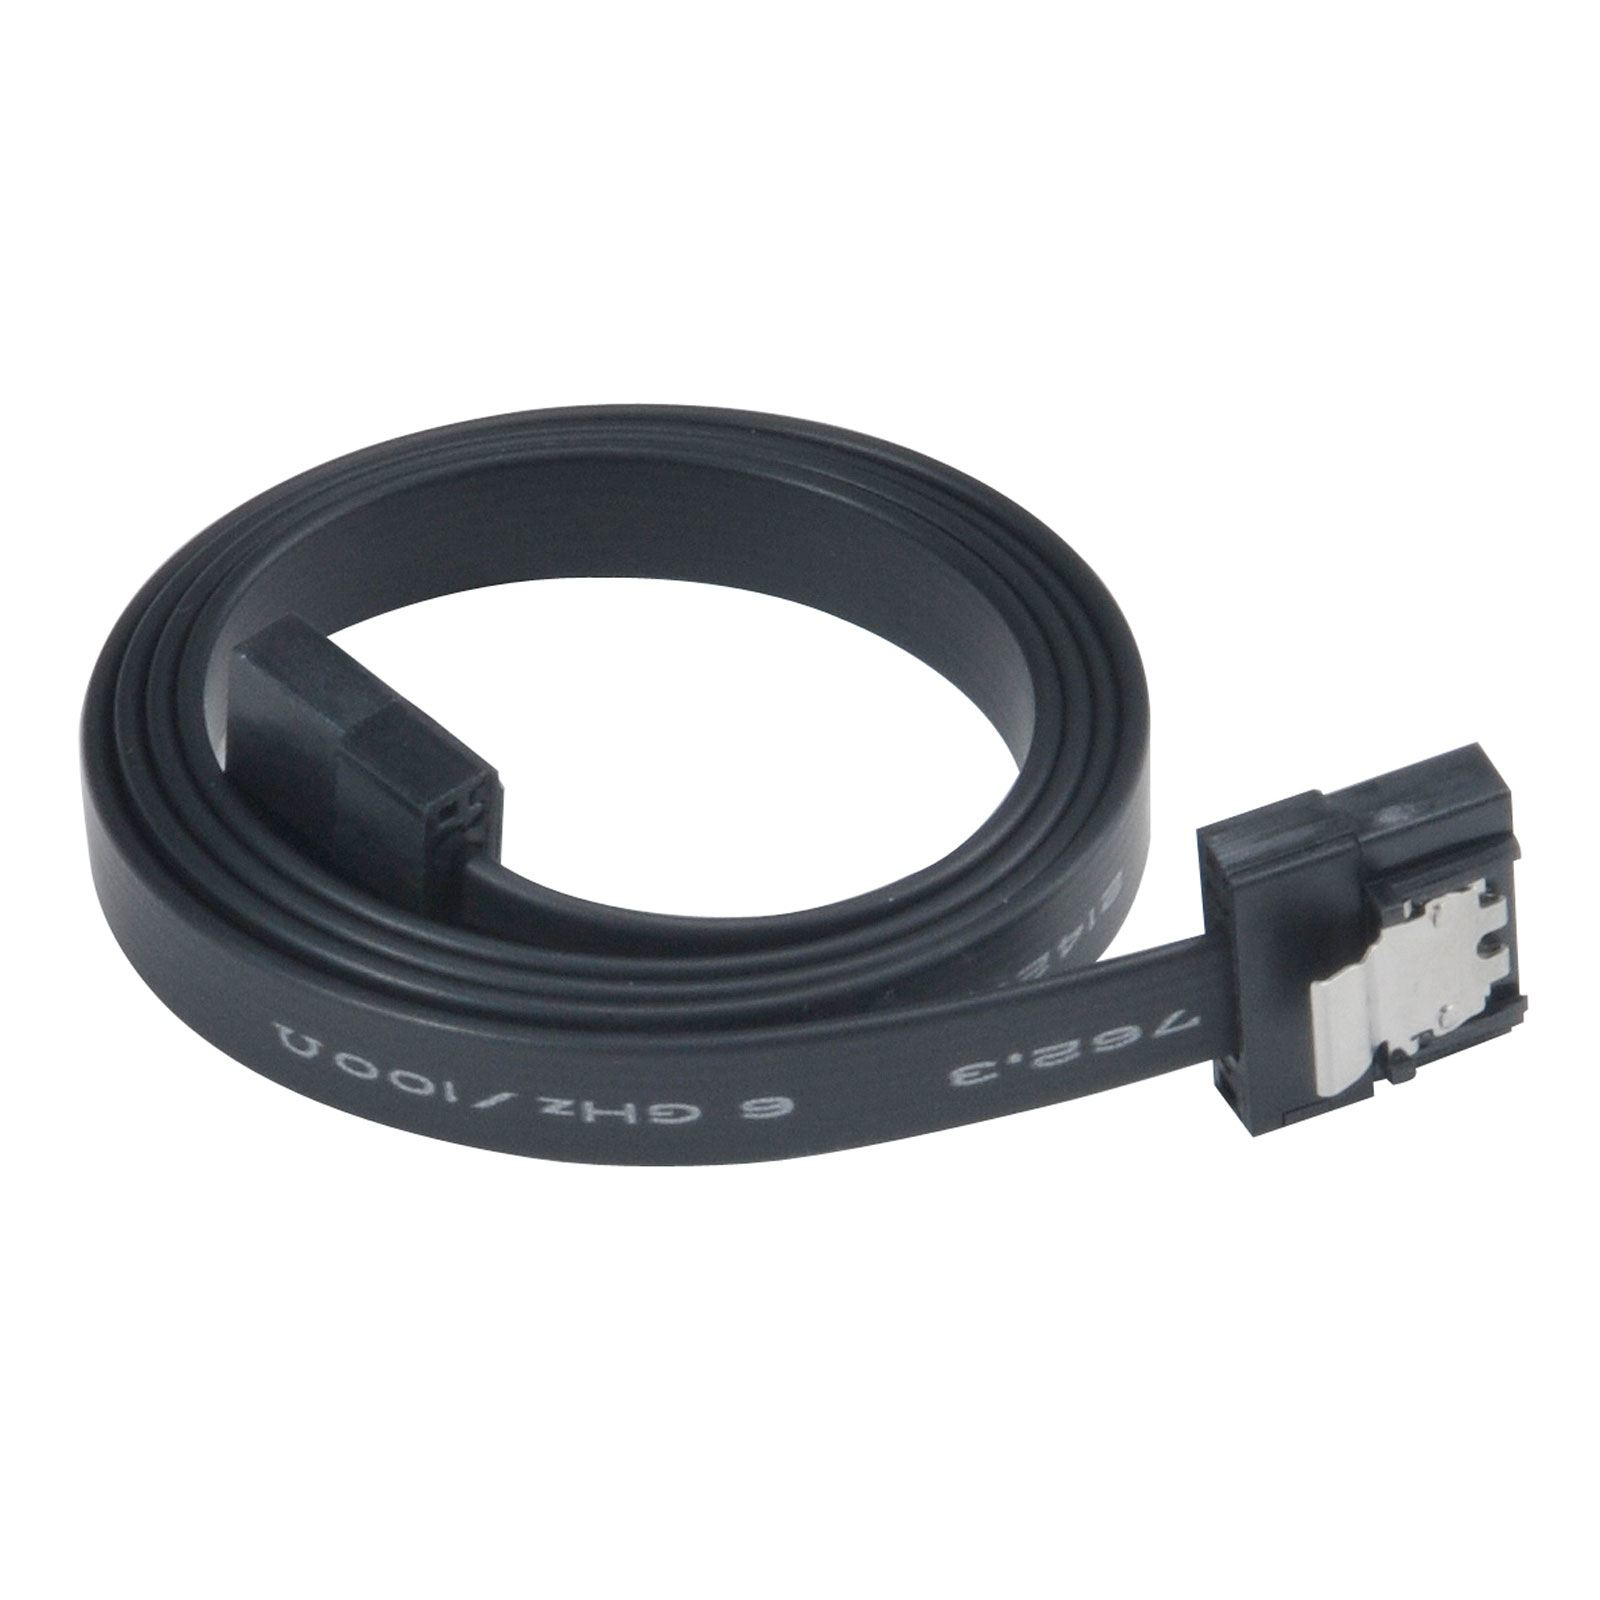 Akasa super slim sata rev 3.0 data cable with securing latches - 50cm, black, *SATAM